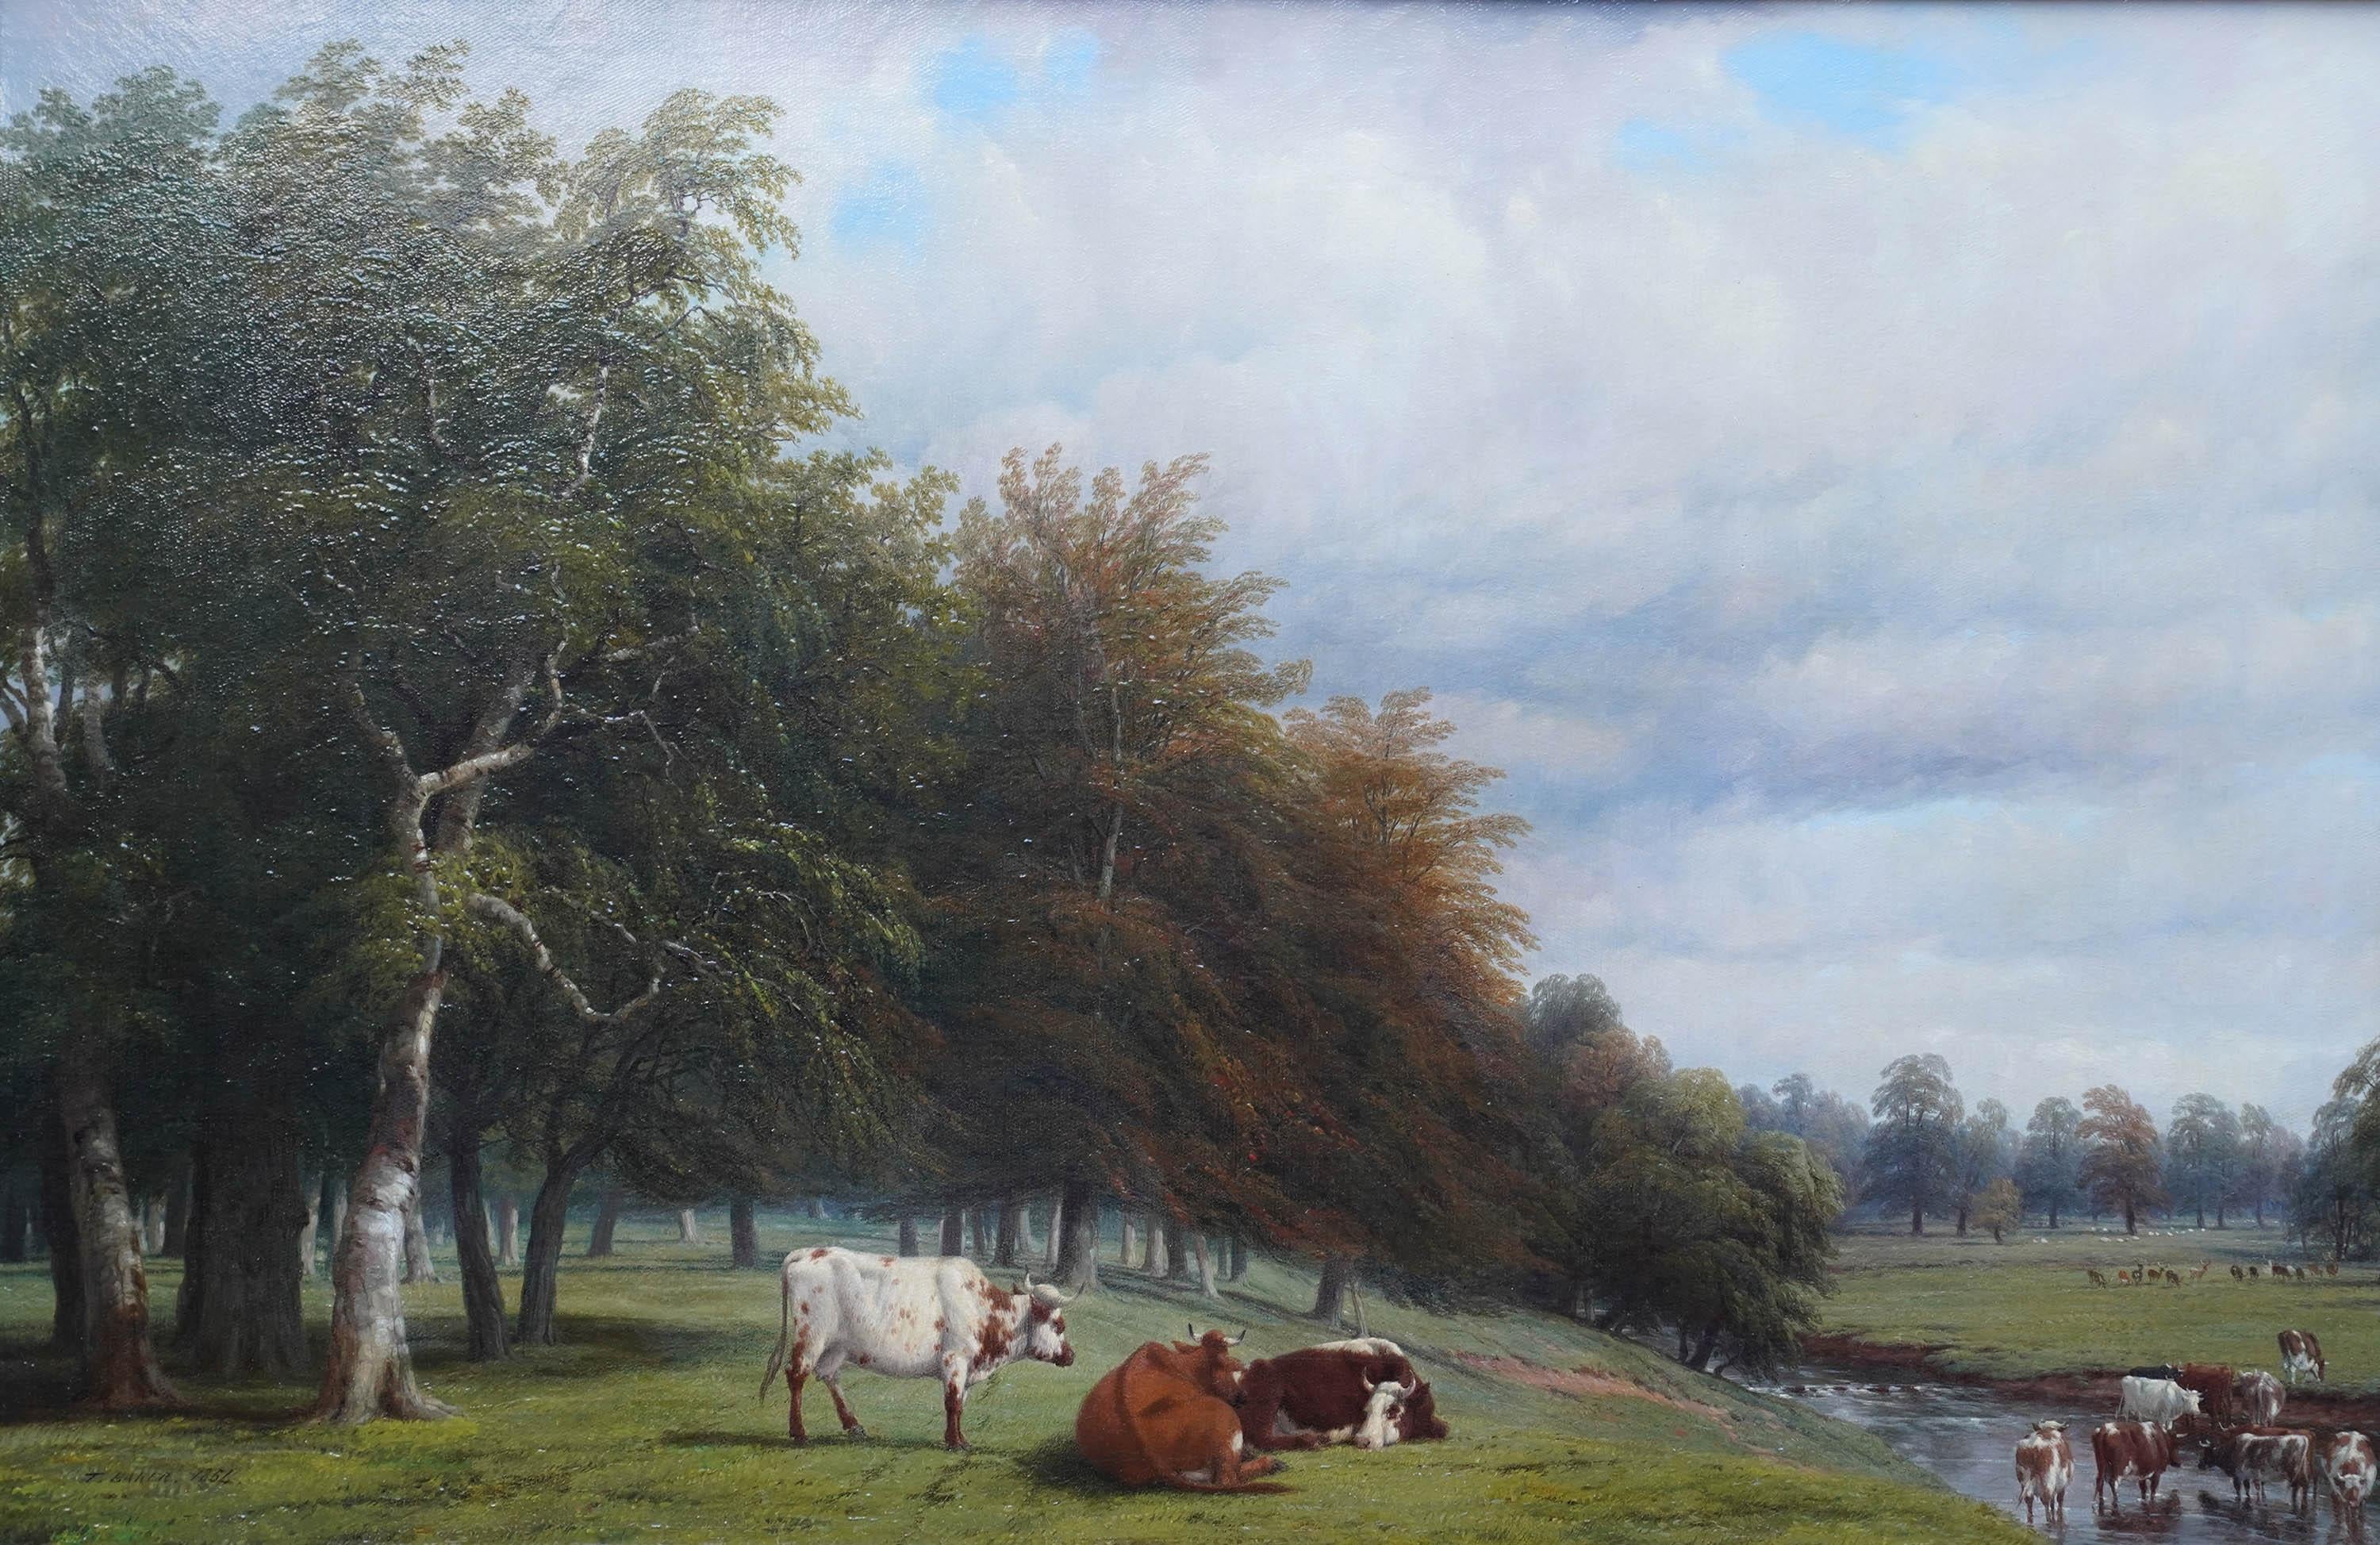 Rinder gratieren in einer bewaldeten Landschaft – britisches viktorianisches Ölgemälde